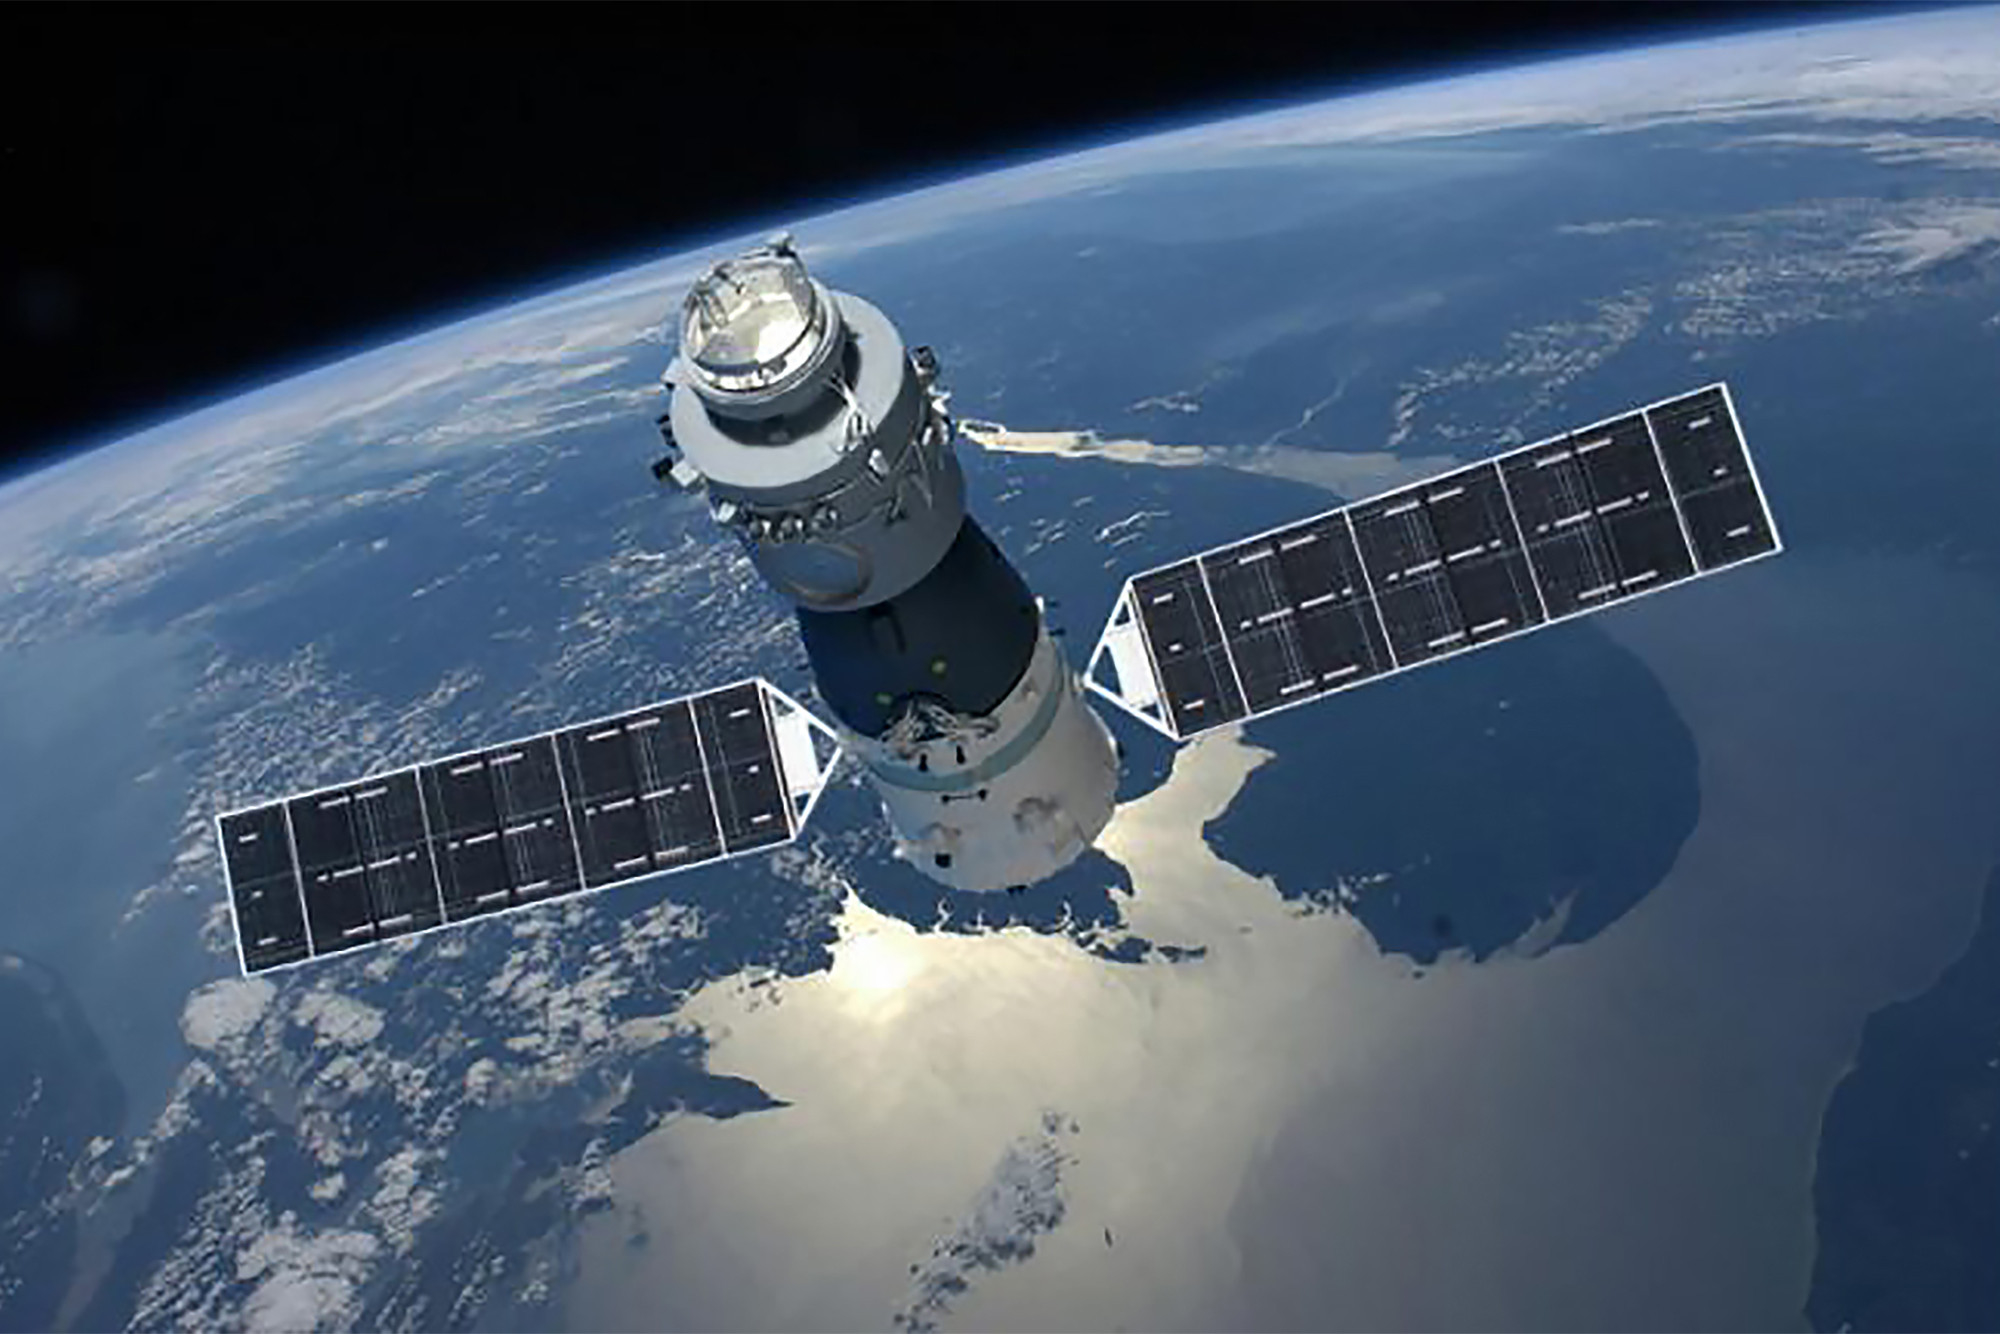 Με μια ημέρα καθυστέρηση θα πέσει στη Γη ο κινεζικός διαστημικός σταθμός